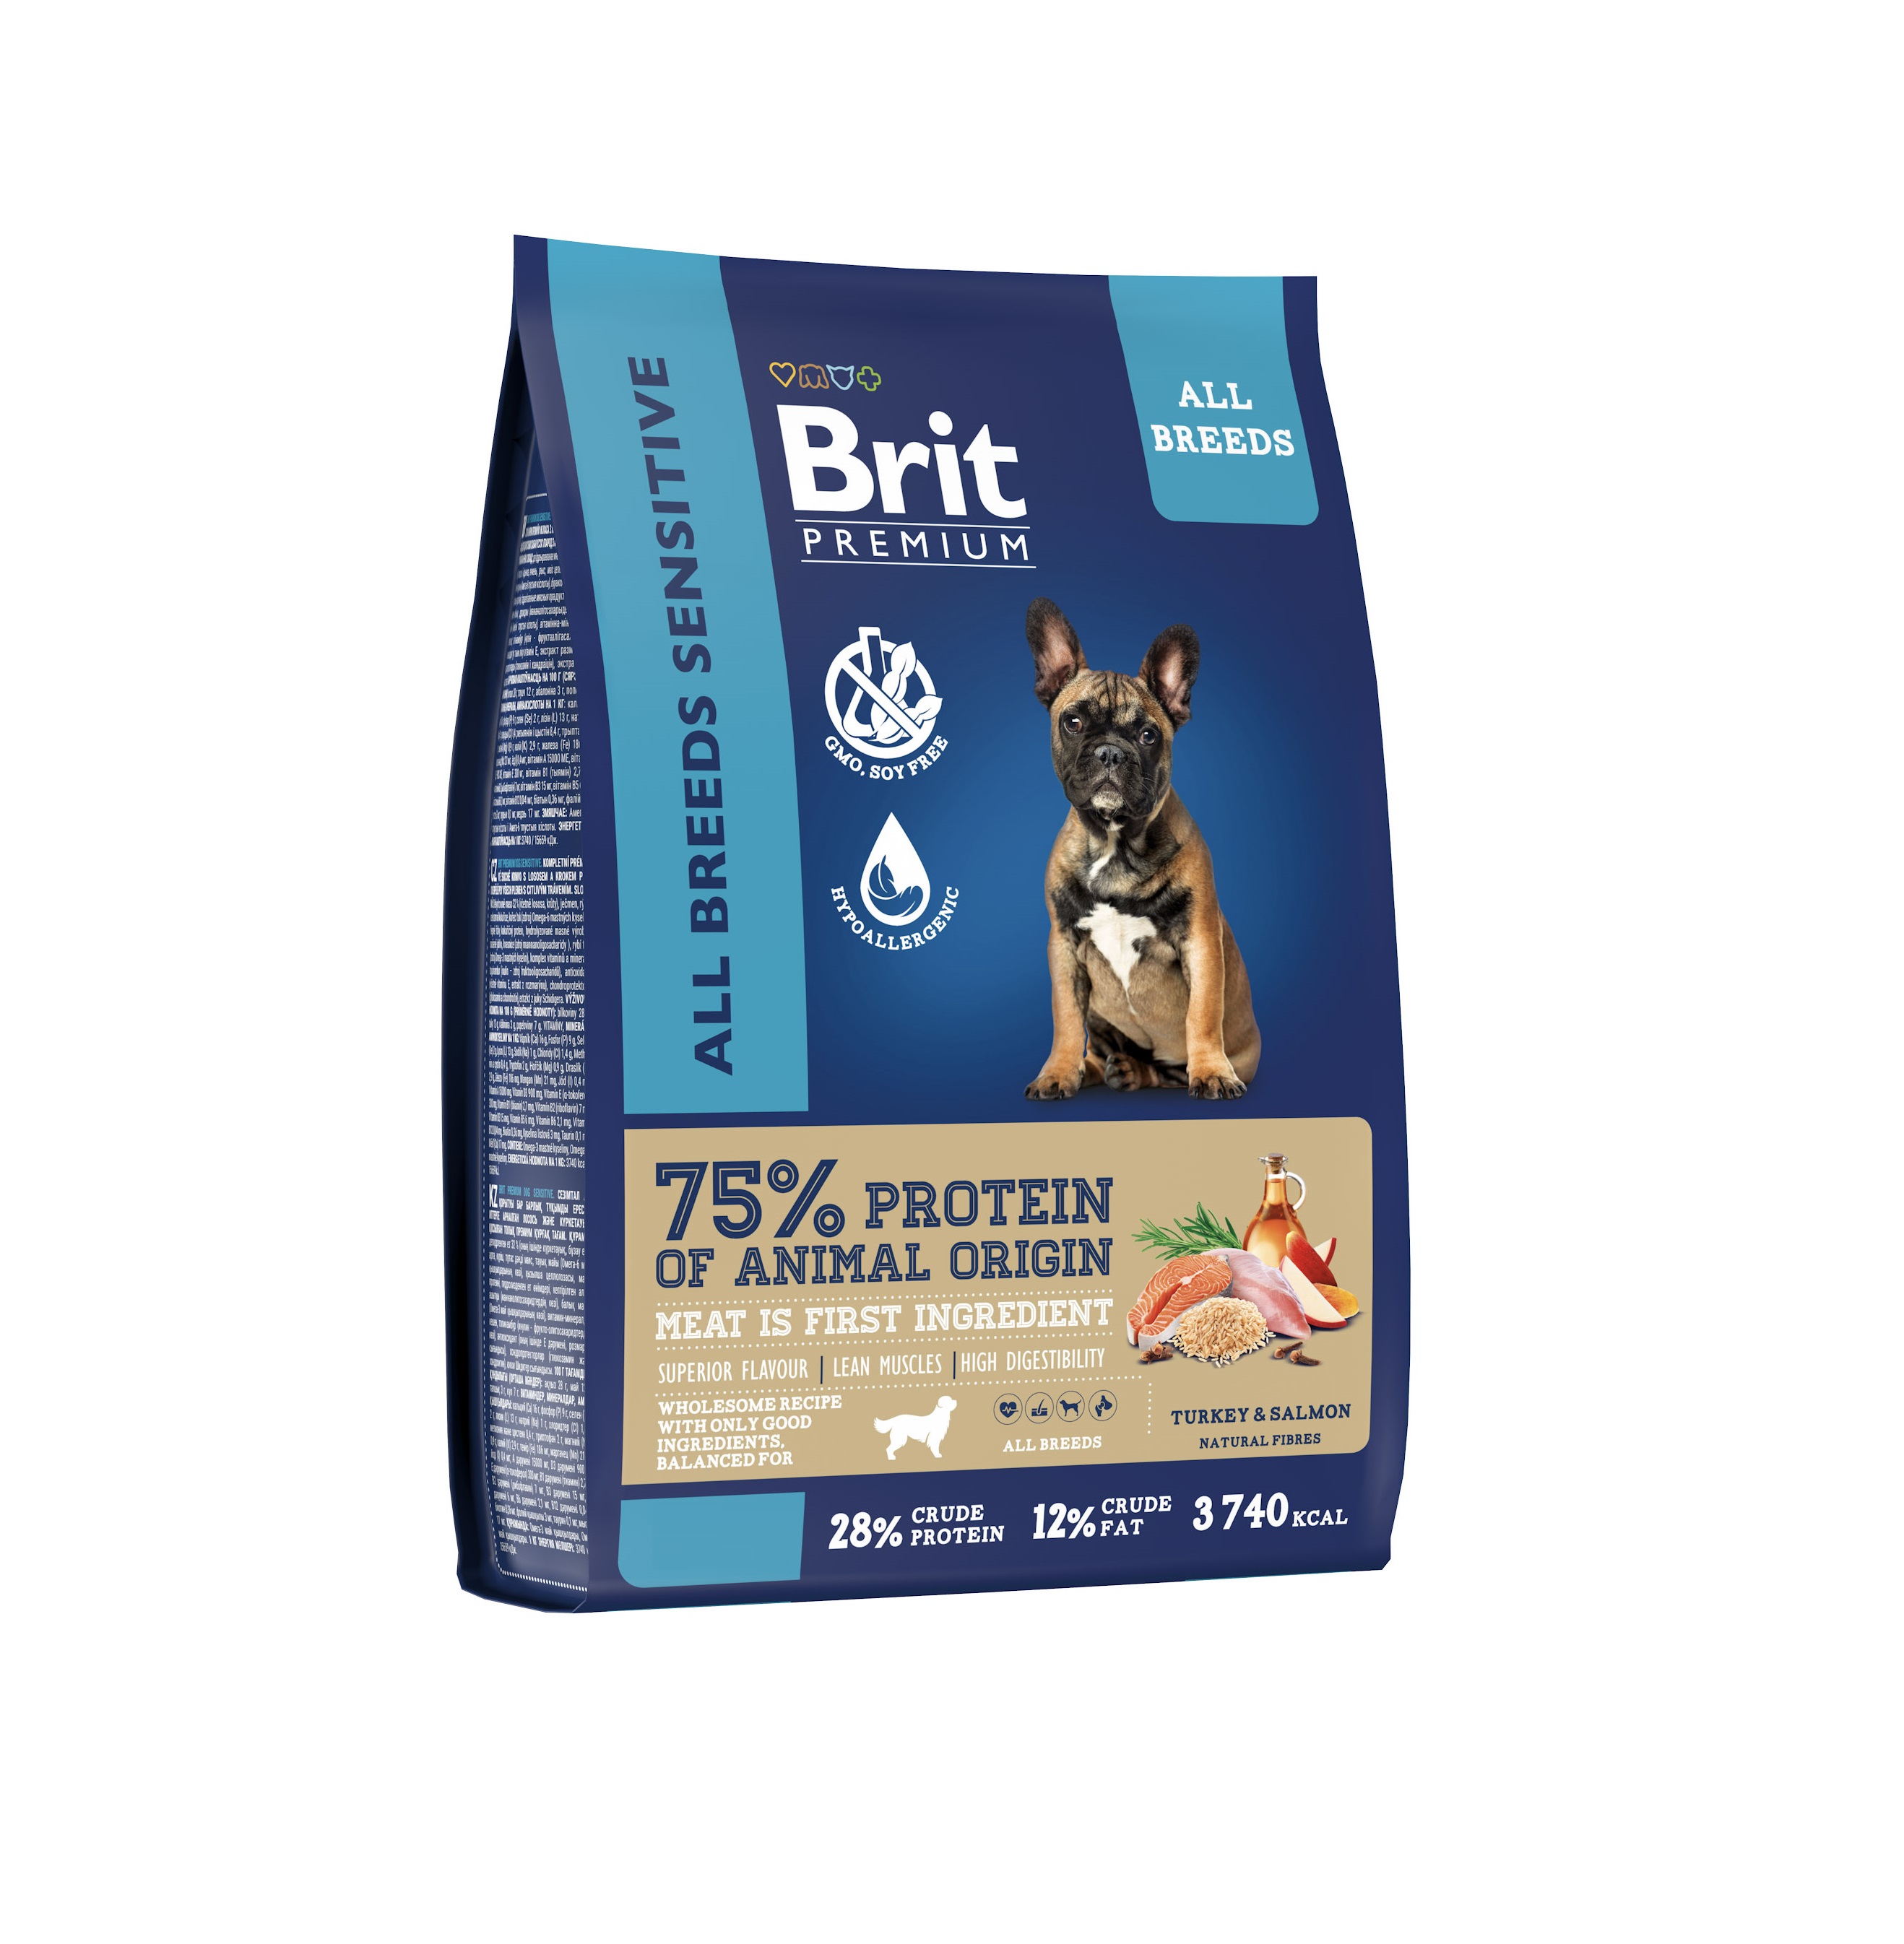 Брит 8кг для собак всех пород Лосось/Индейка - для Чувствительного пищеварения (Brit Premium by Nature) + Подарок